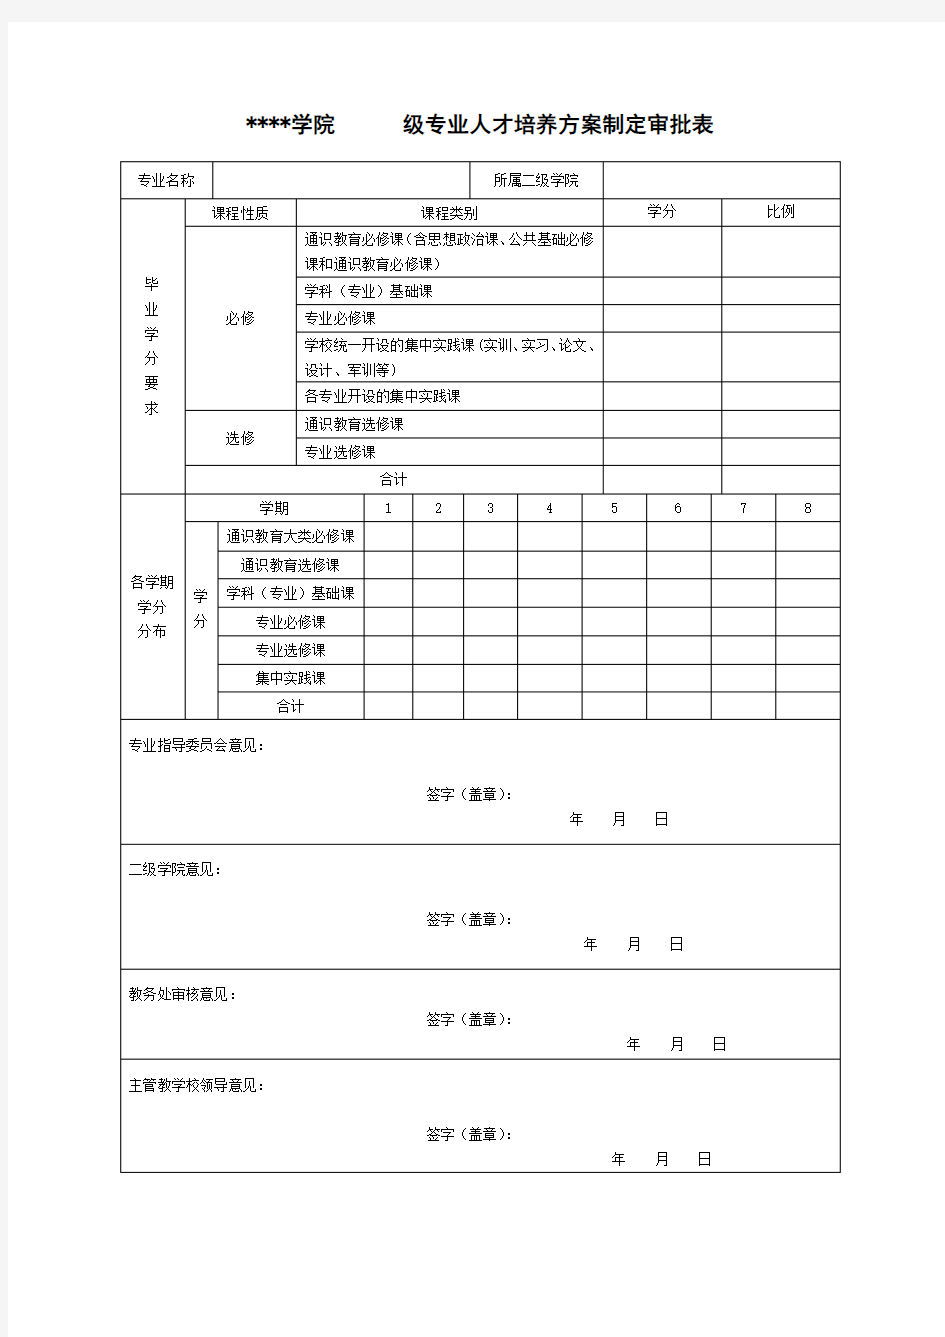 湖南财政经济学院级专业人才培养方案制定审批表【模板】